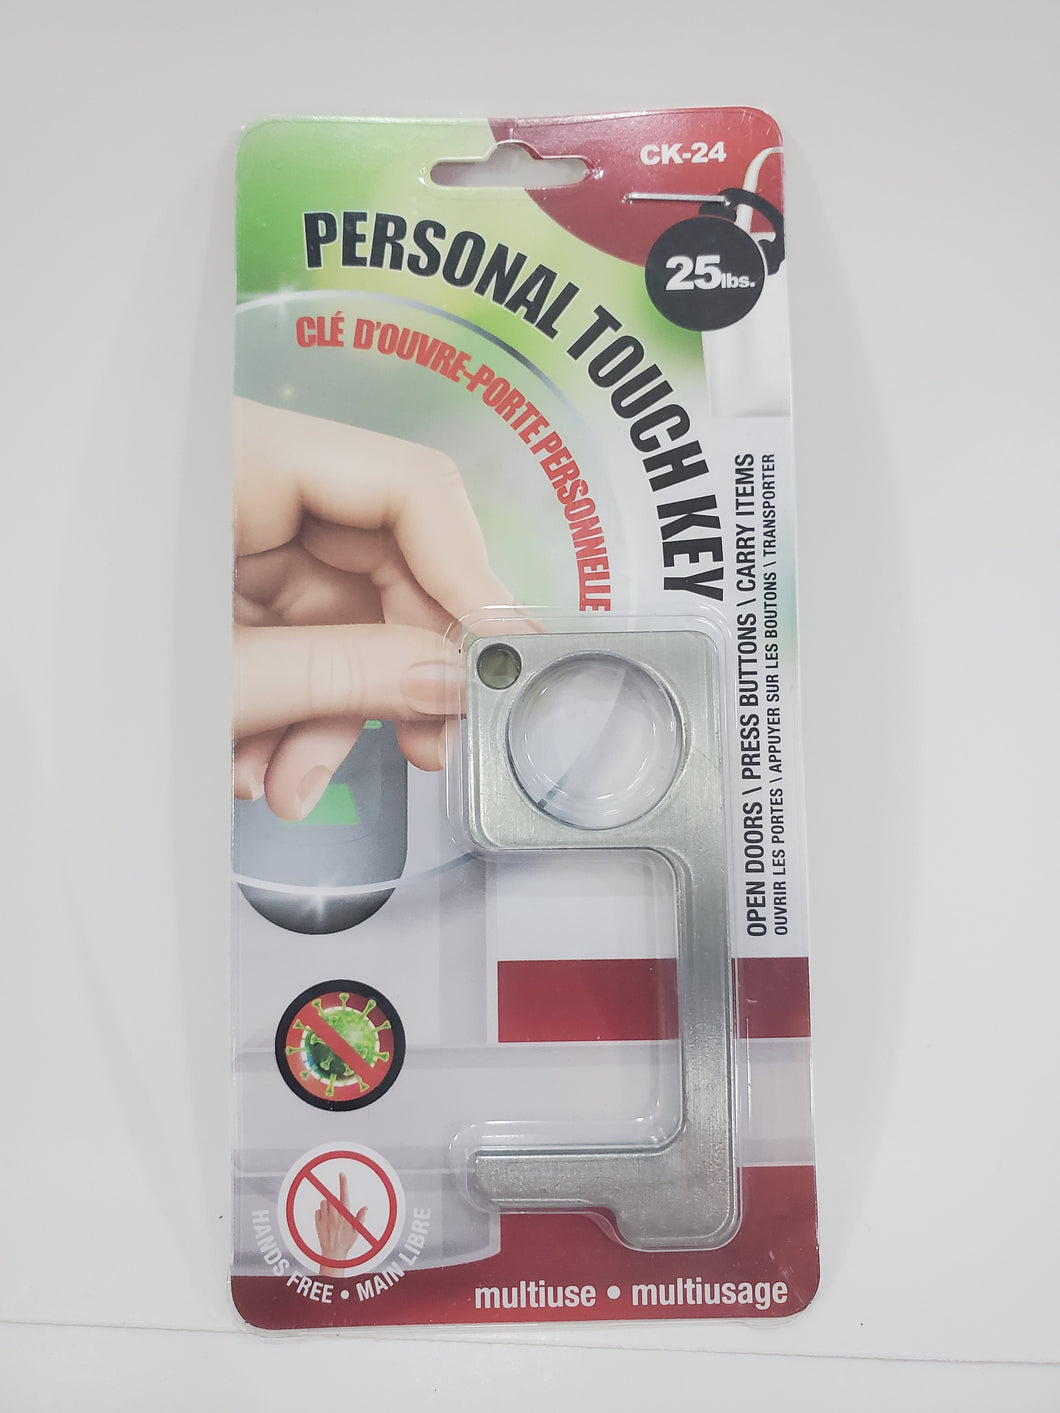 Touche tactile personnelle sans germes - CK-24